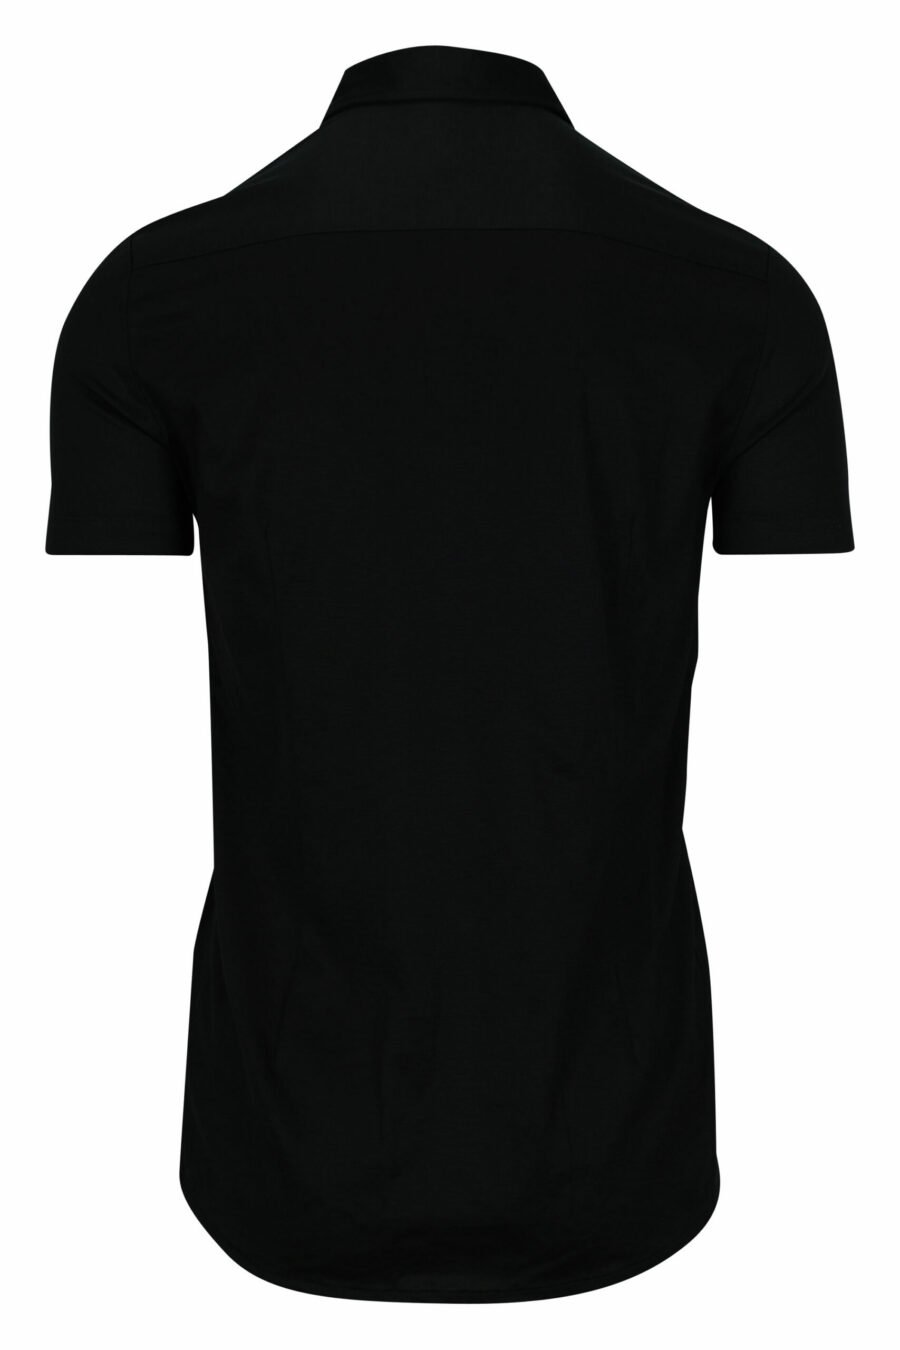 Black short sleeve shirt with eagle mini logo - 8056861420206 1 scaled